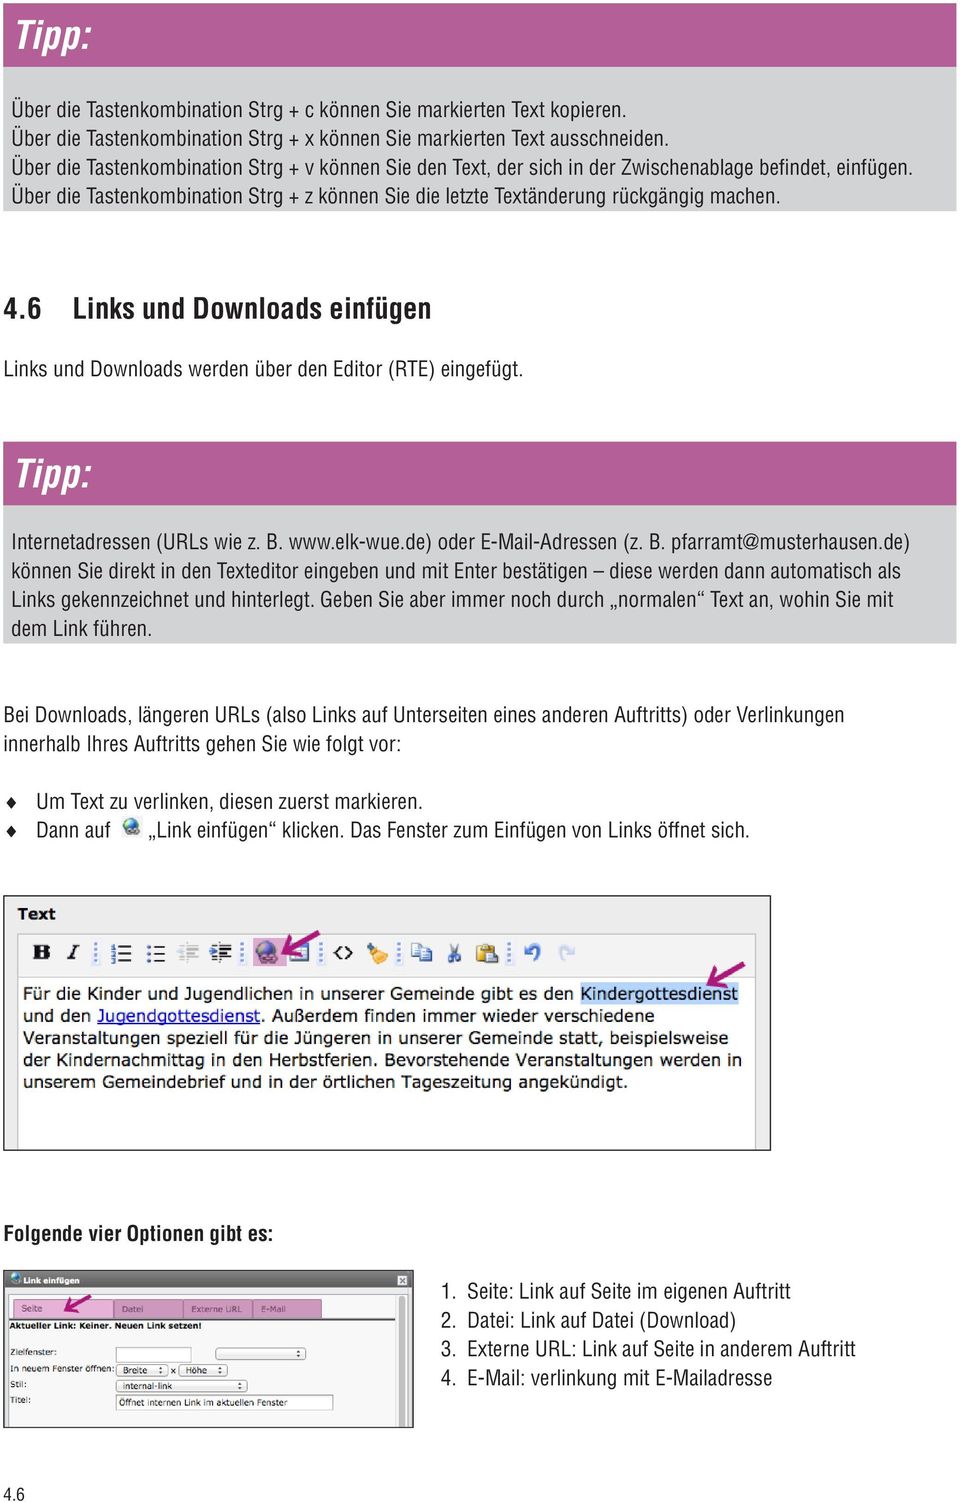 6 Links und Downloads einfügen Links und Downloads werden über den Editor (RTE) eingefügt. Tipp: Internetadressen (URLs wie z. B. www.elk-wue.de) oder E-Mail-Adressen (z. B. pfarramt@musterhausen.